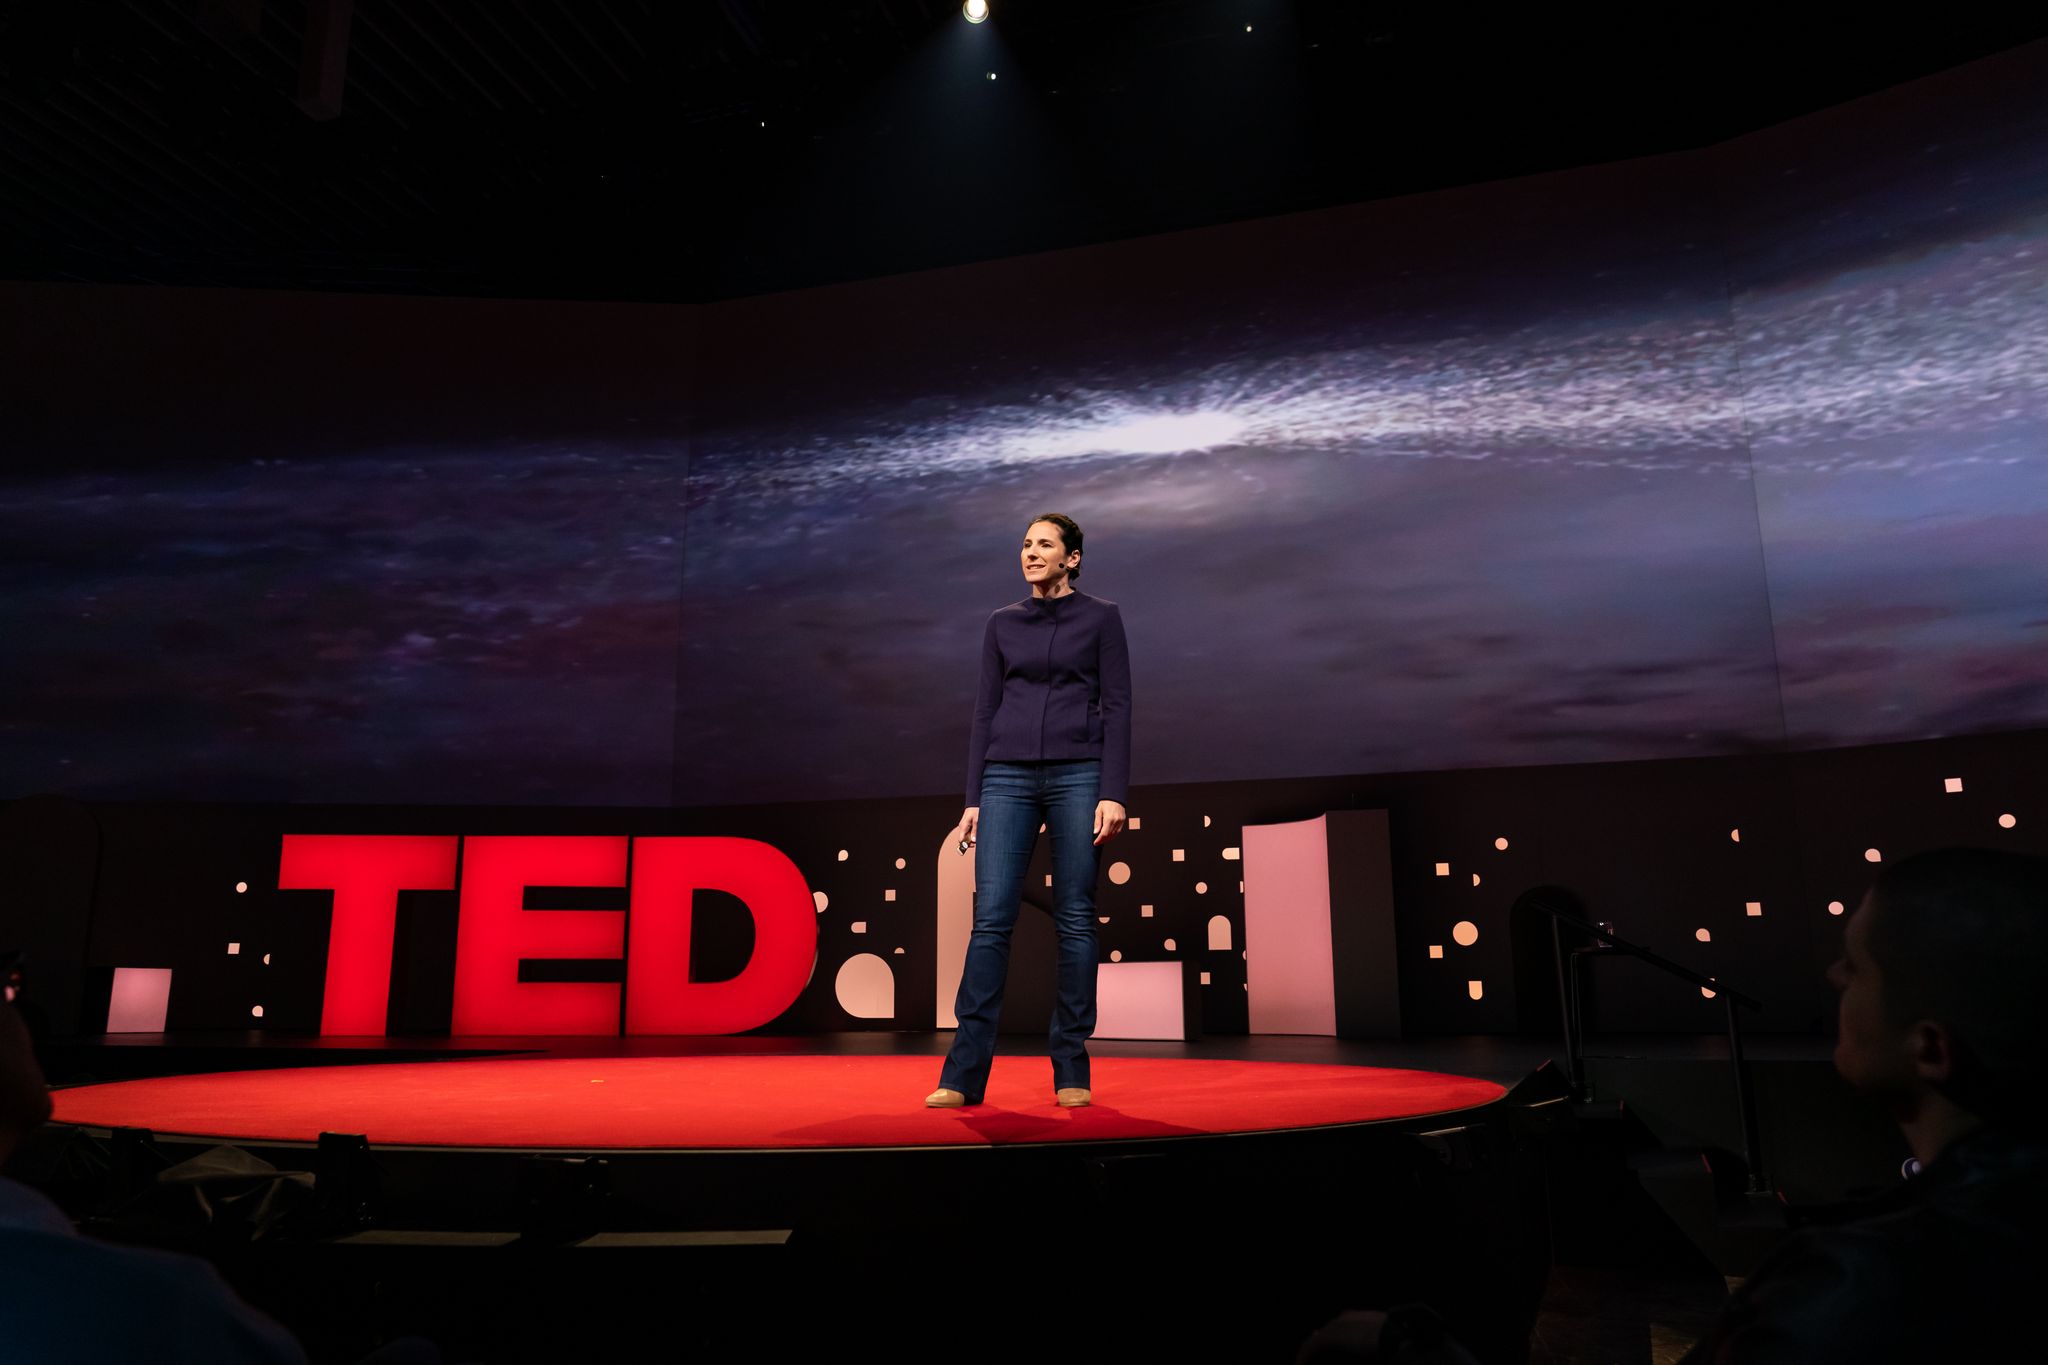 Juna Kollmeier presenting a Ted Talk.